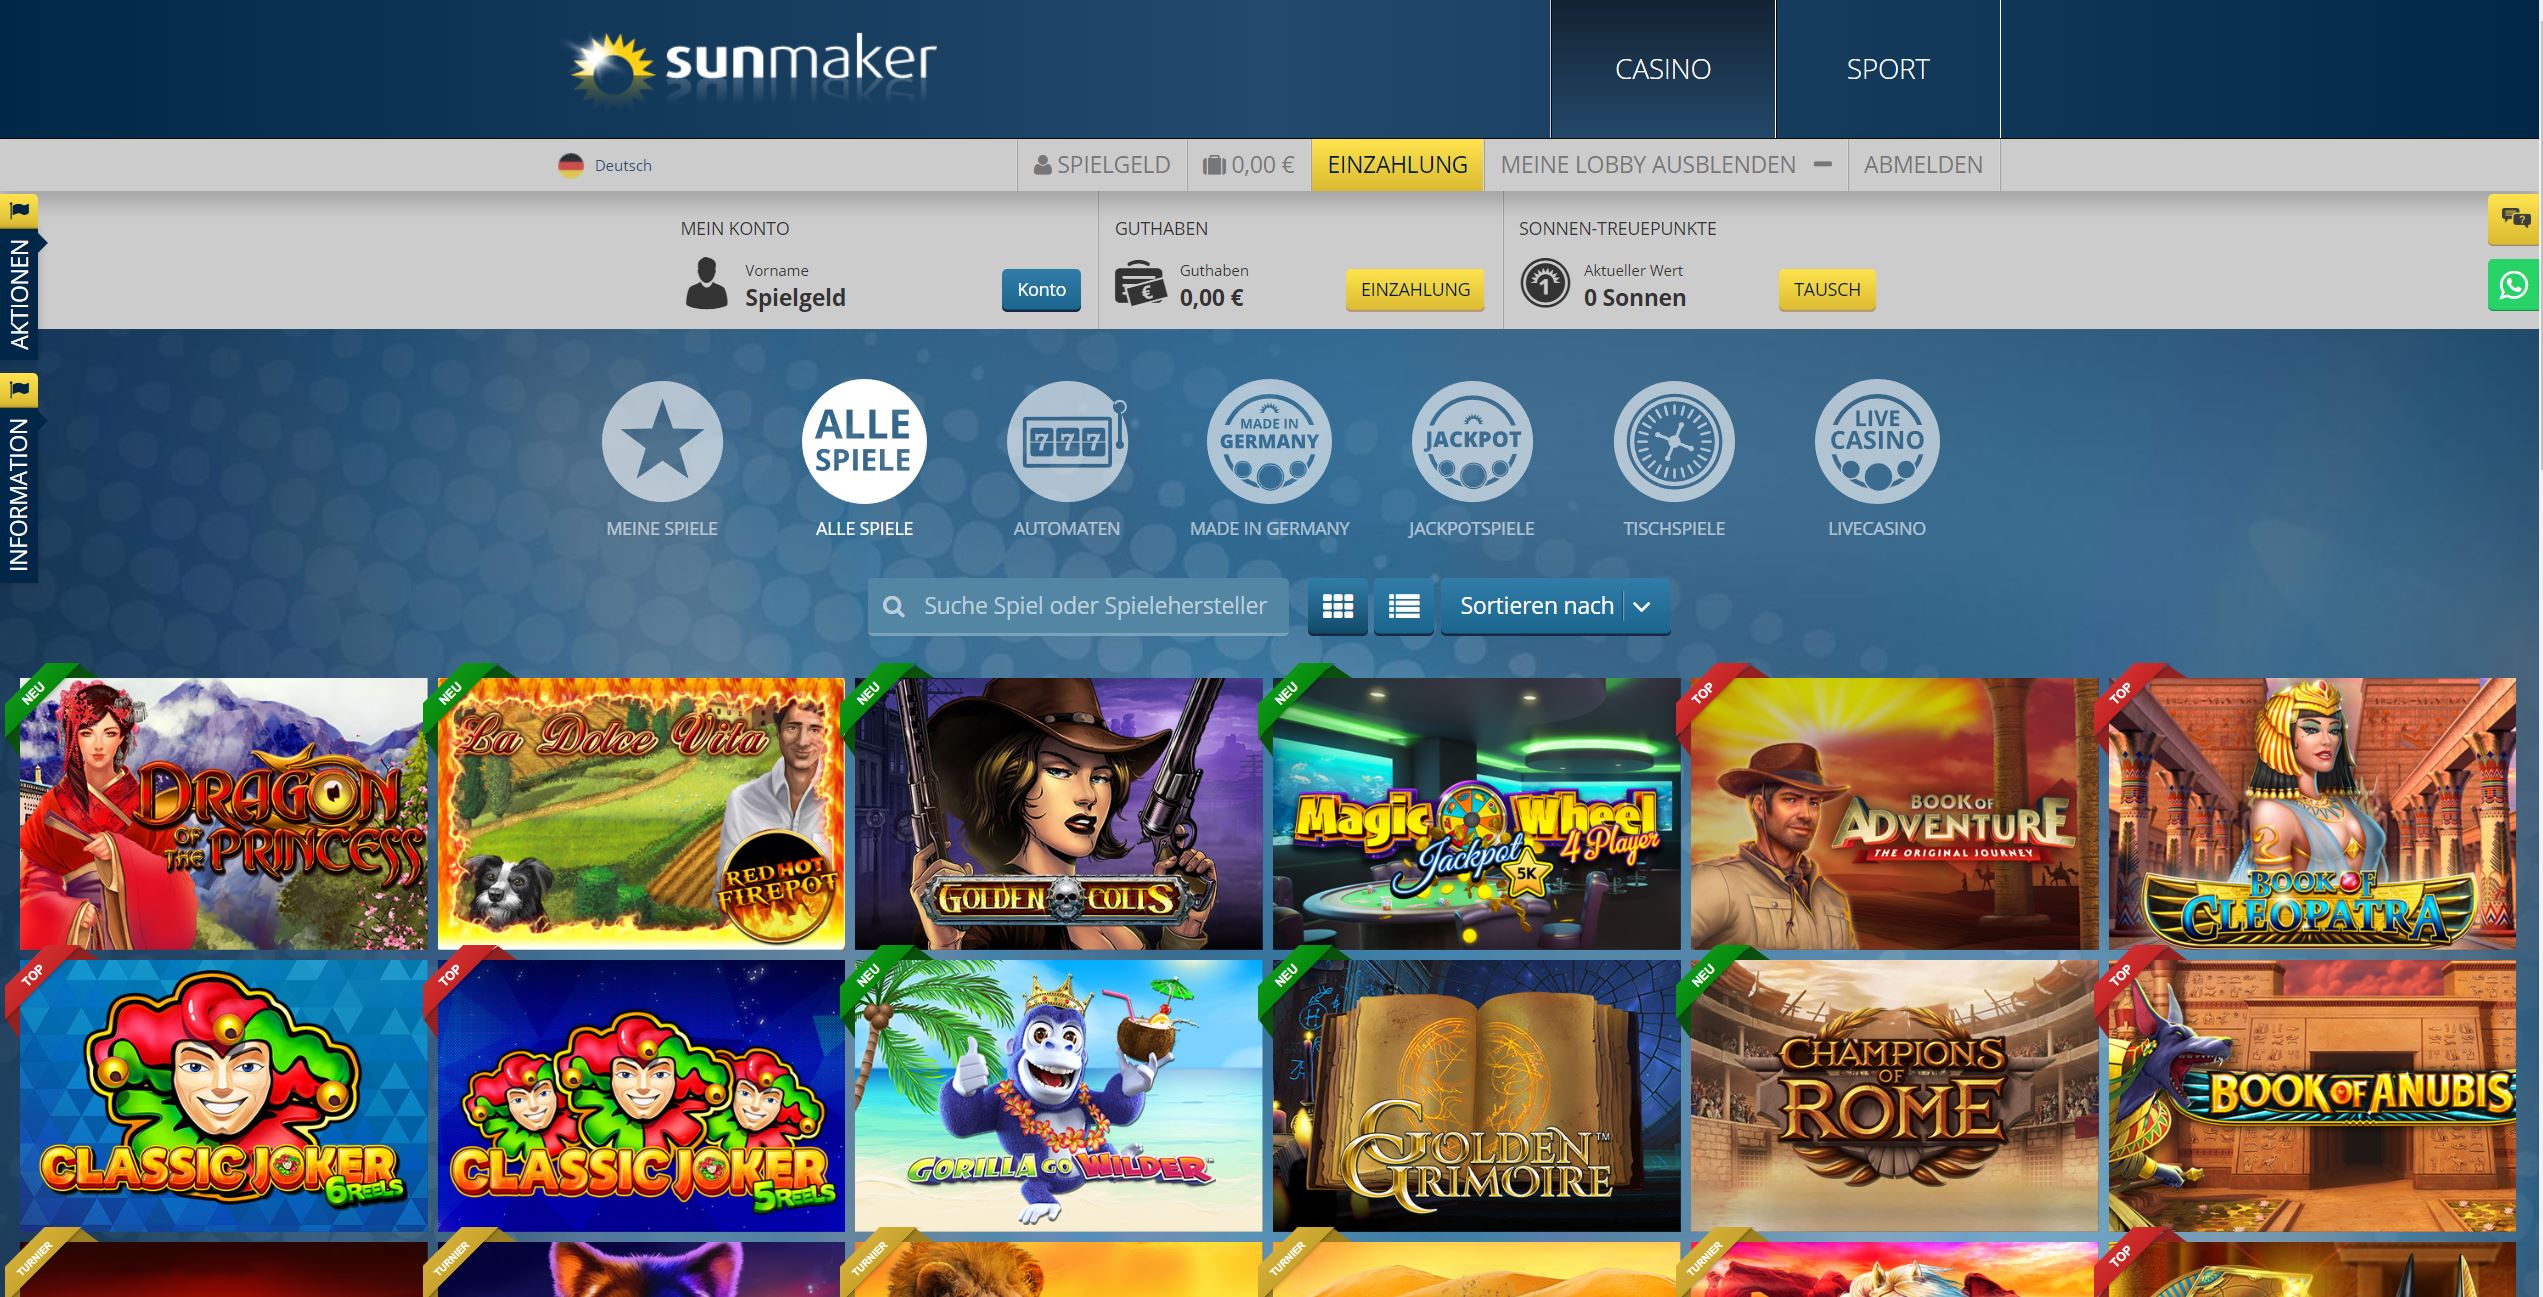 Sunmaker Spiele